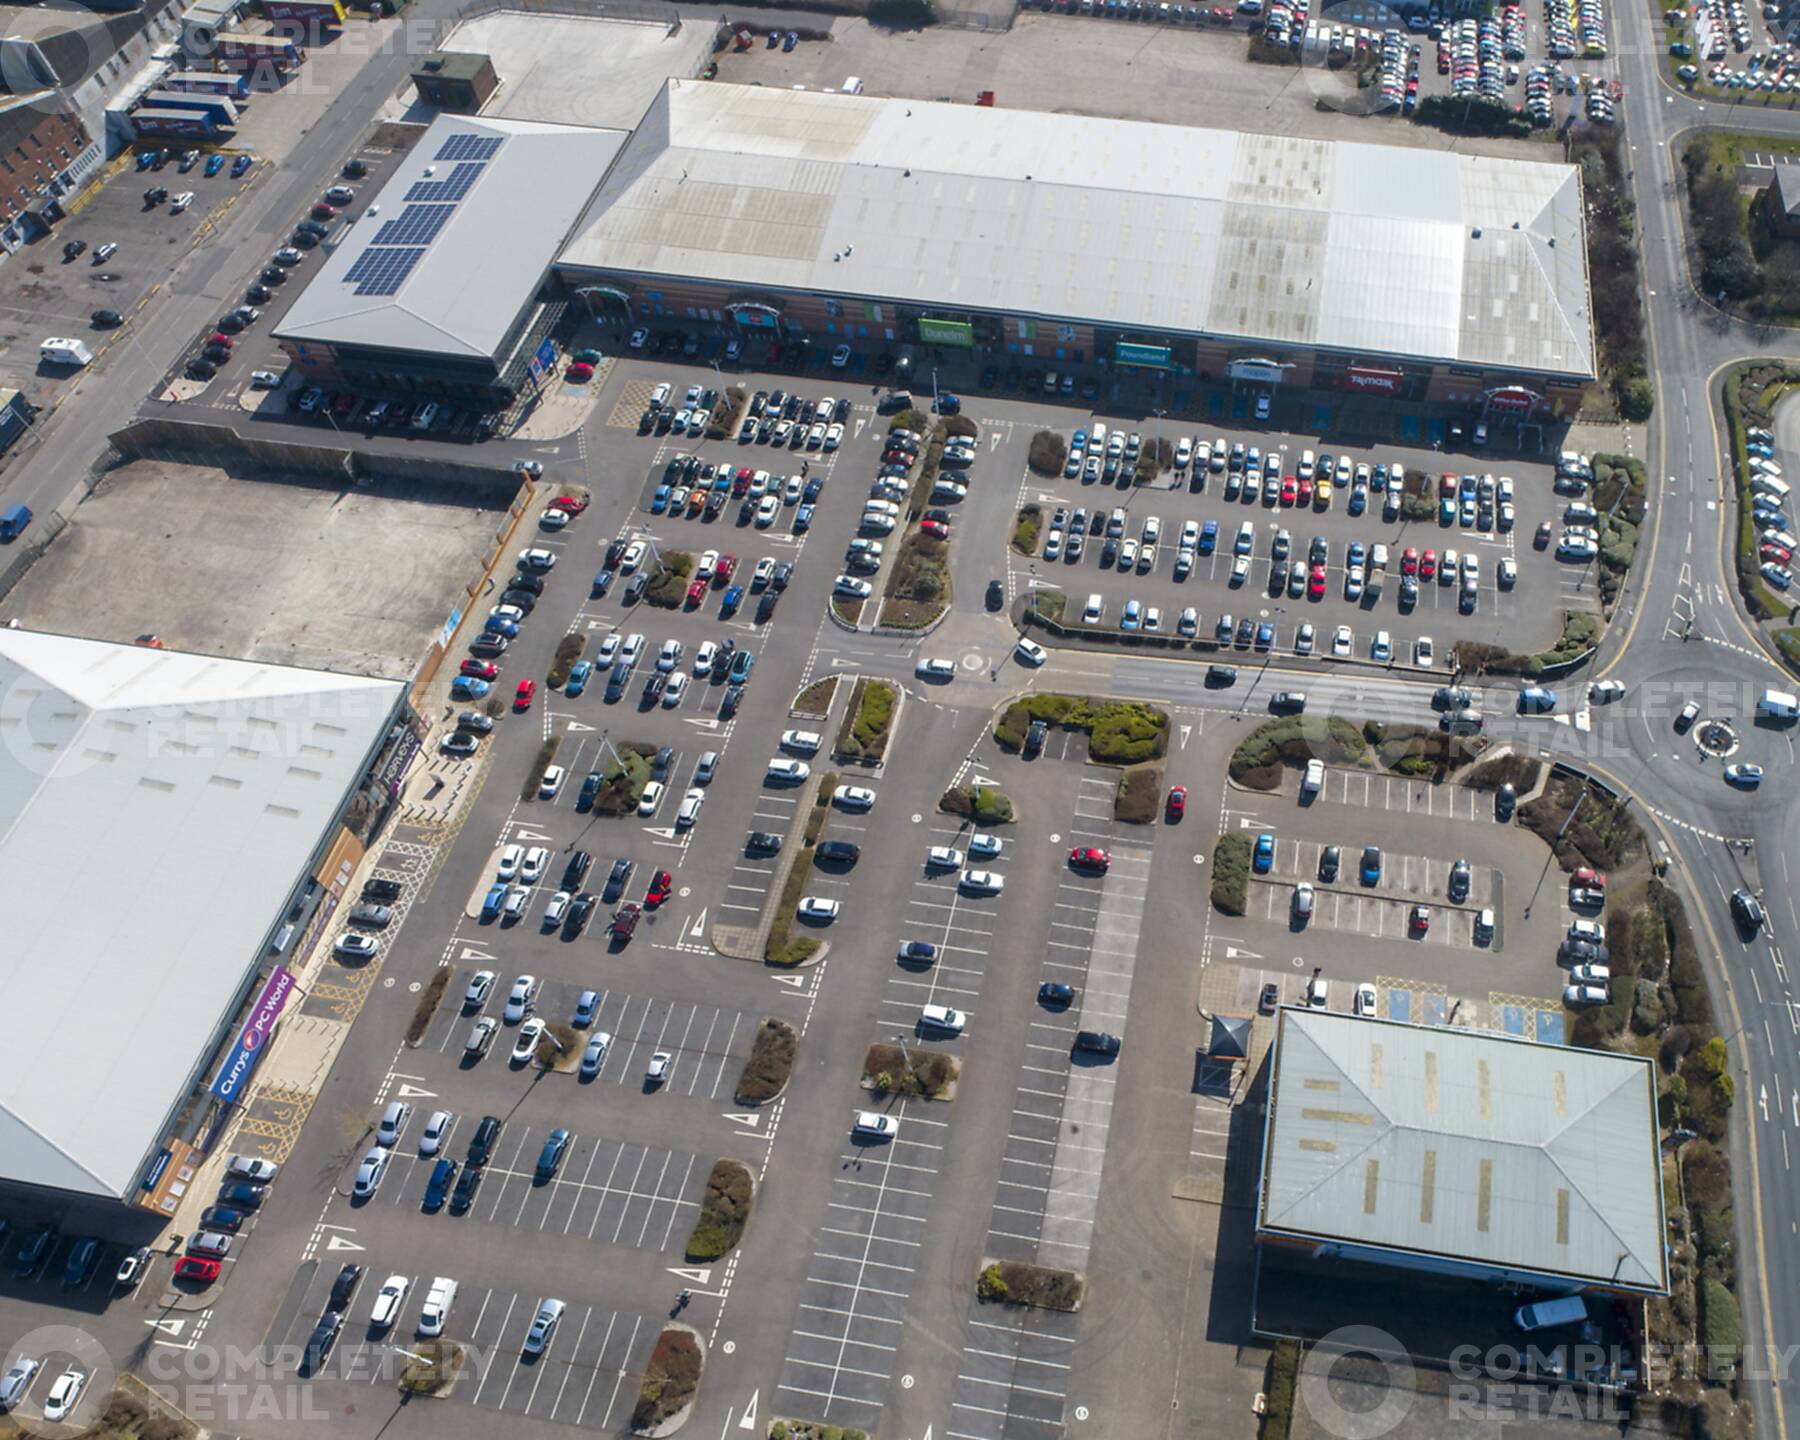 Blackpool Retail Park